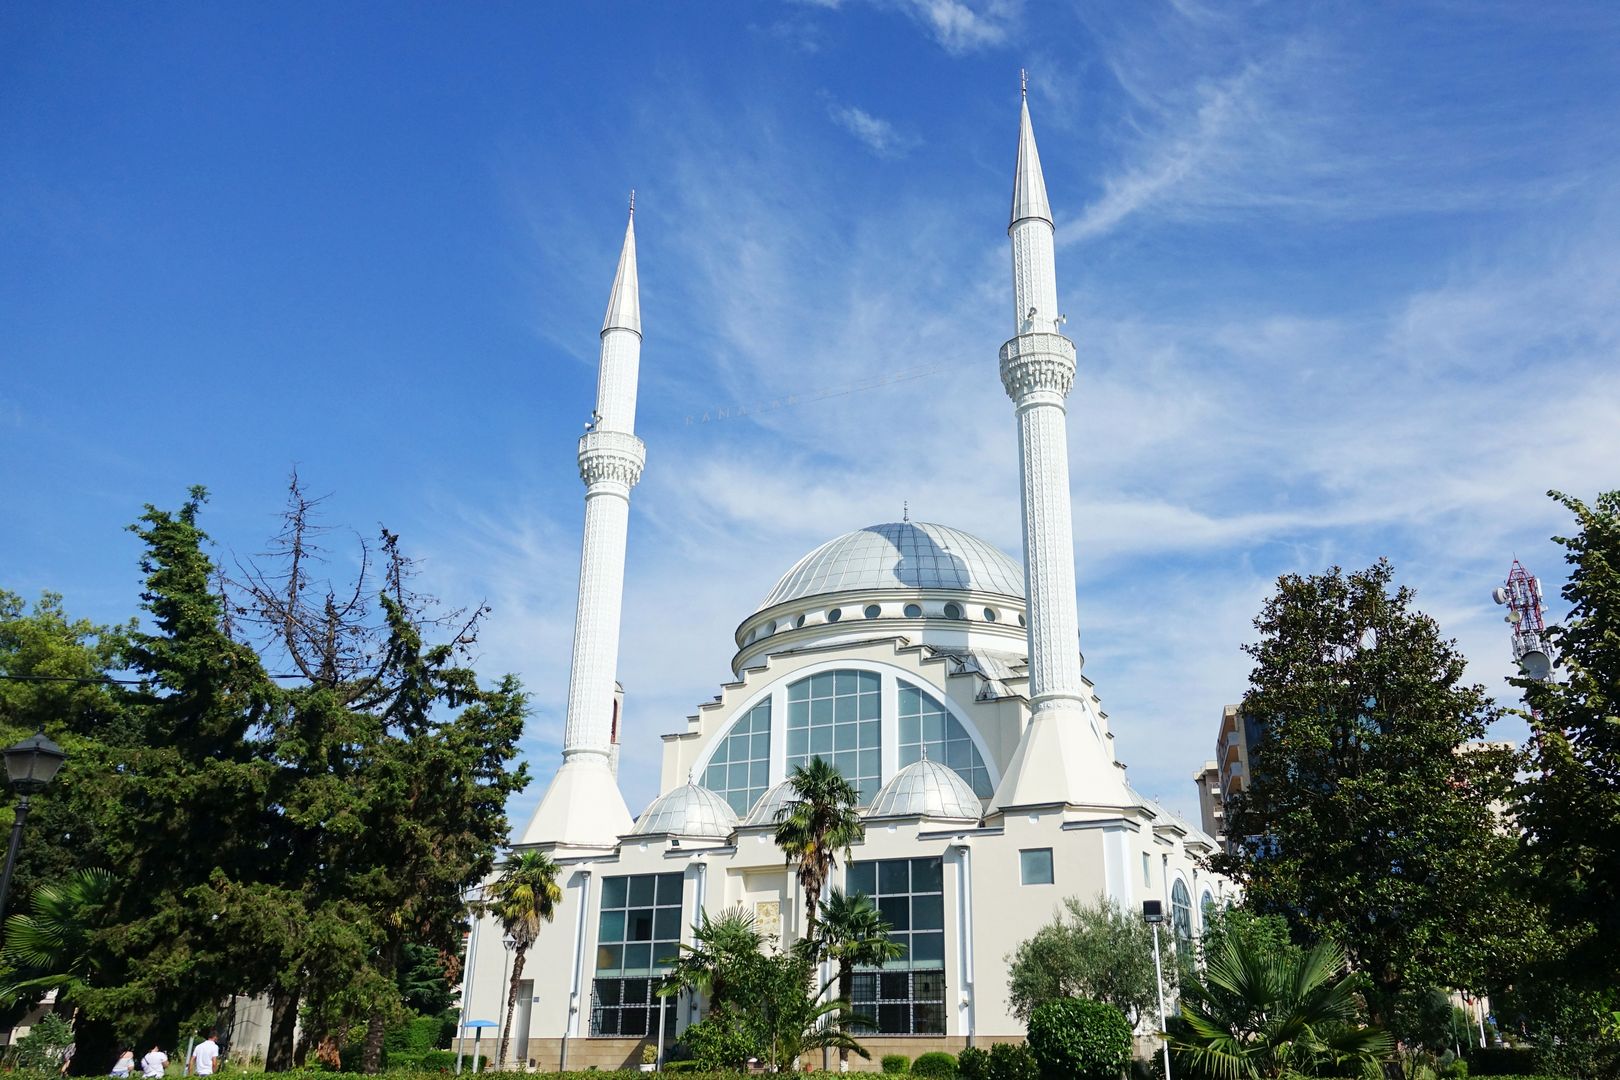 Albánie_Skadar_mešita Abu Bakr (1)